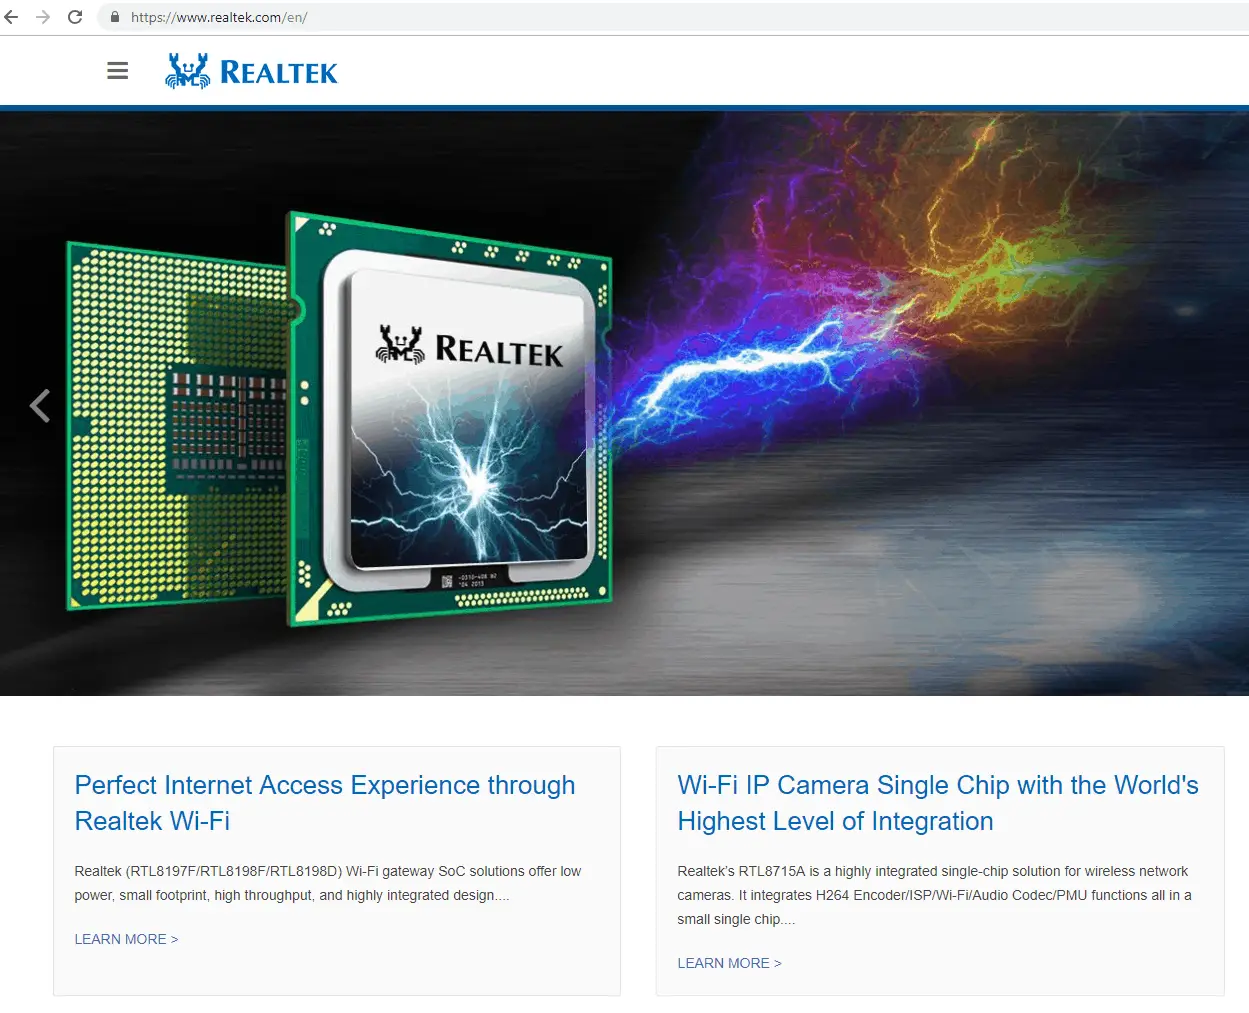 Realtek website homepage